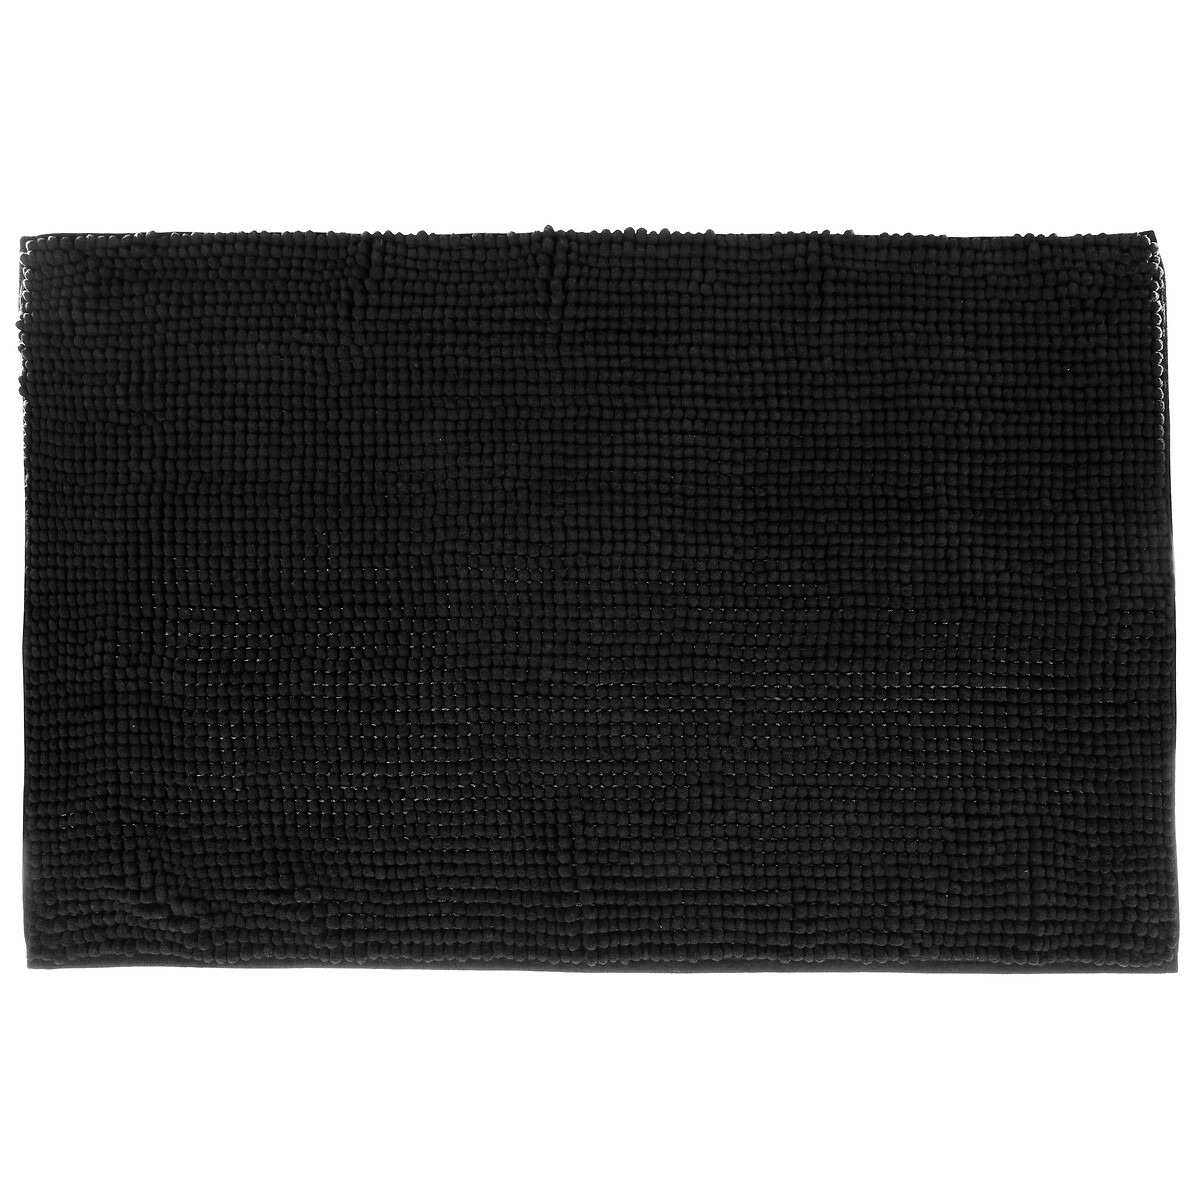 Badkamerkleedje-badmat voor op de vloer zwart 50 x 80 cm